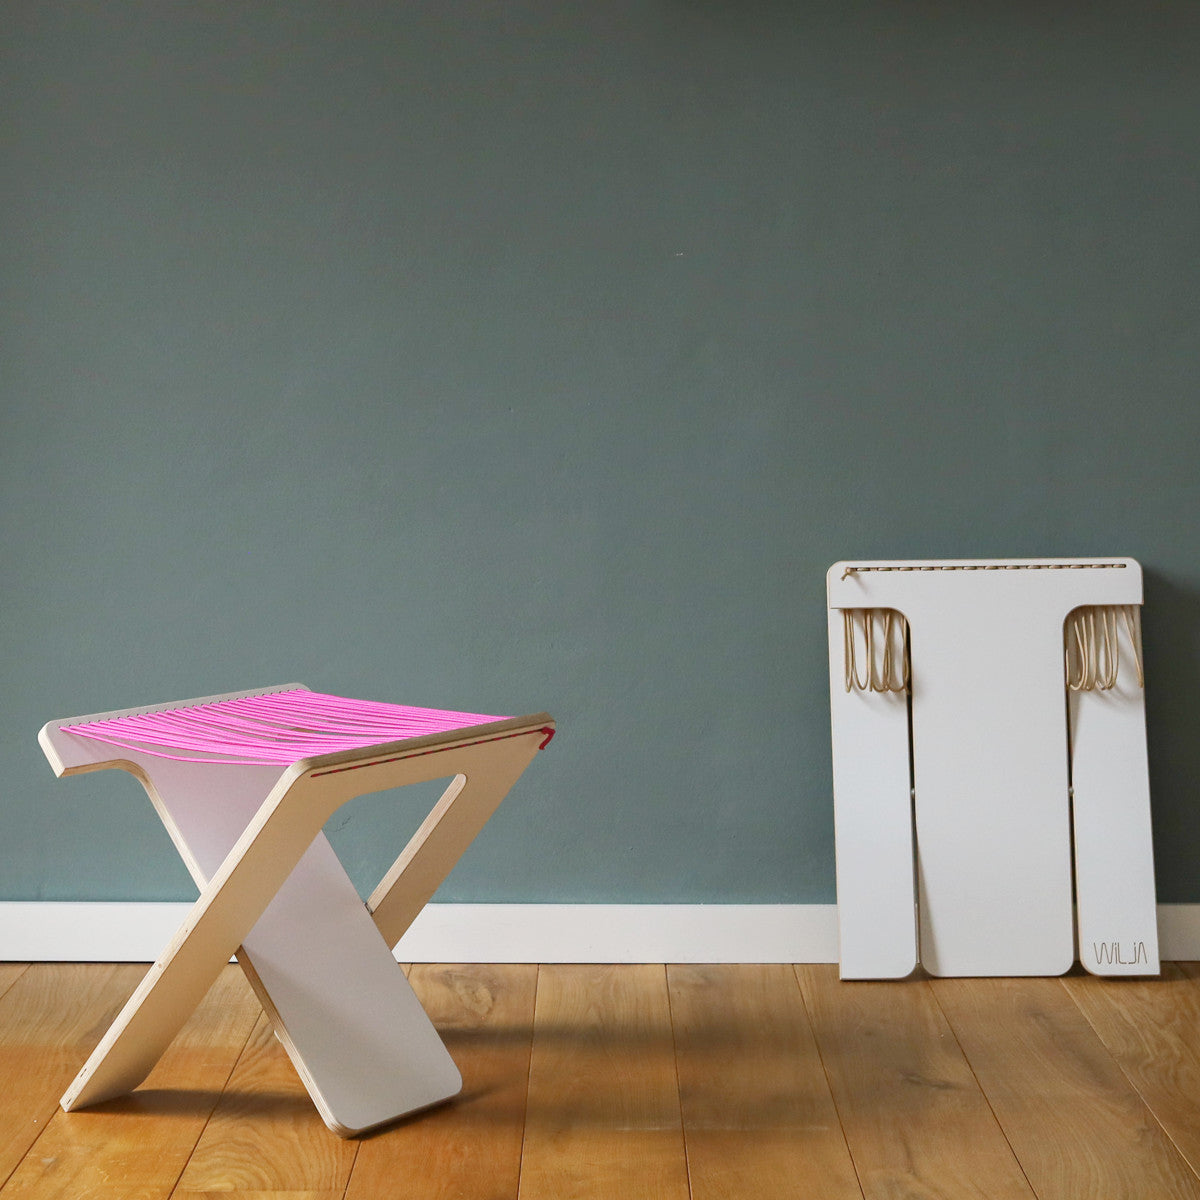 WILJA Klapphocker Karl faltbar aus Holz mit Seil in pink im Zimmer mobiles Sitzmöbel nah